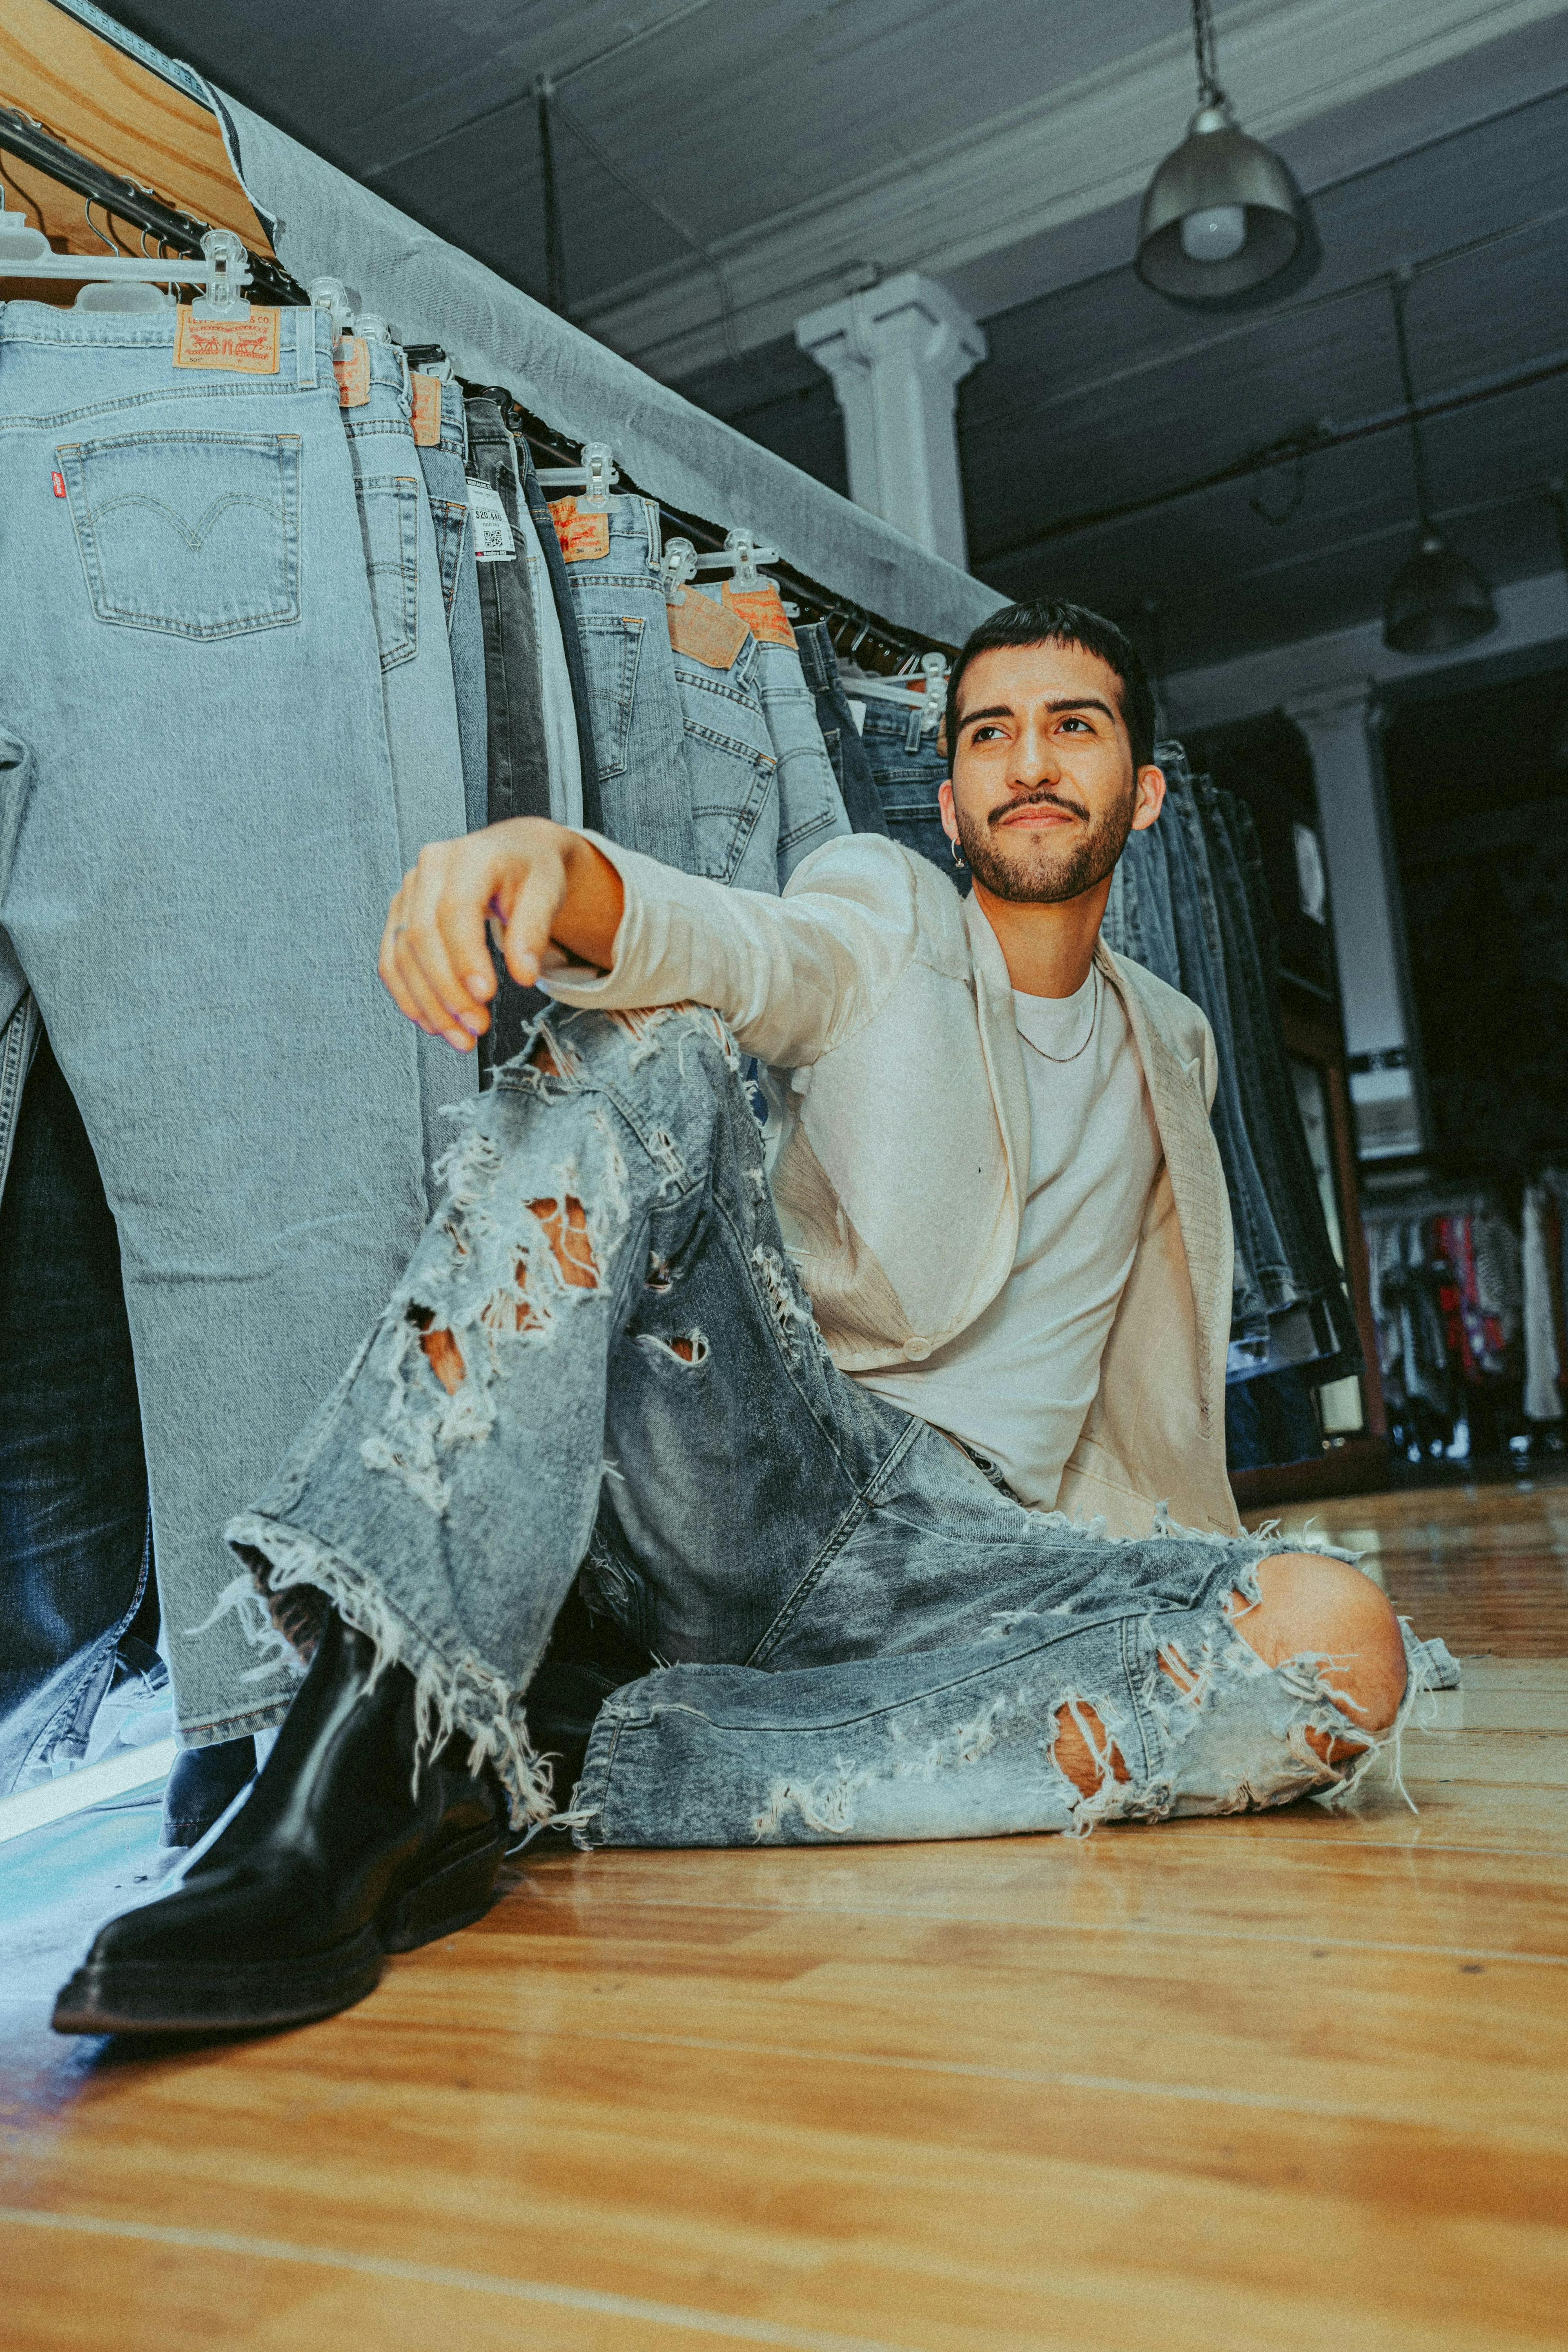 pants jeans wood hardwood floor flooring adult male man person